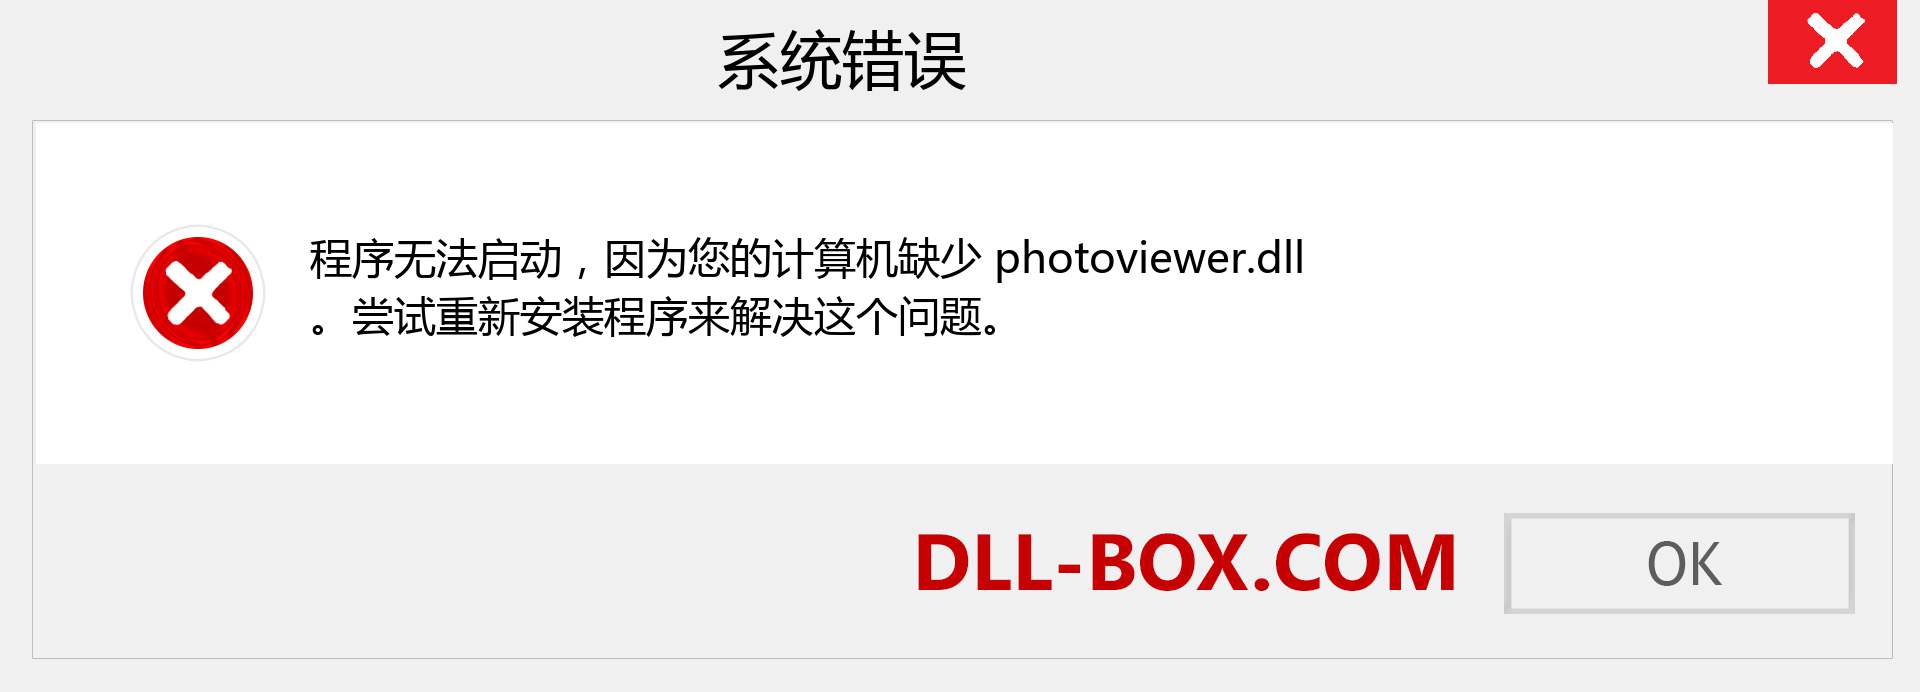 photoviewer.dll 文件丢失？。 适用于 Windows 7、8、10 的下载 - 修复 Windows、照片、图像上的 photoviewer dll 丢失错误